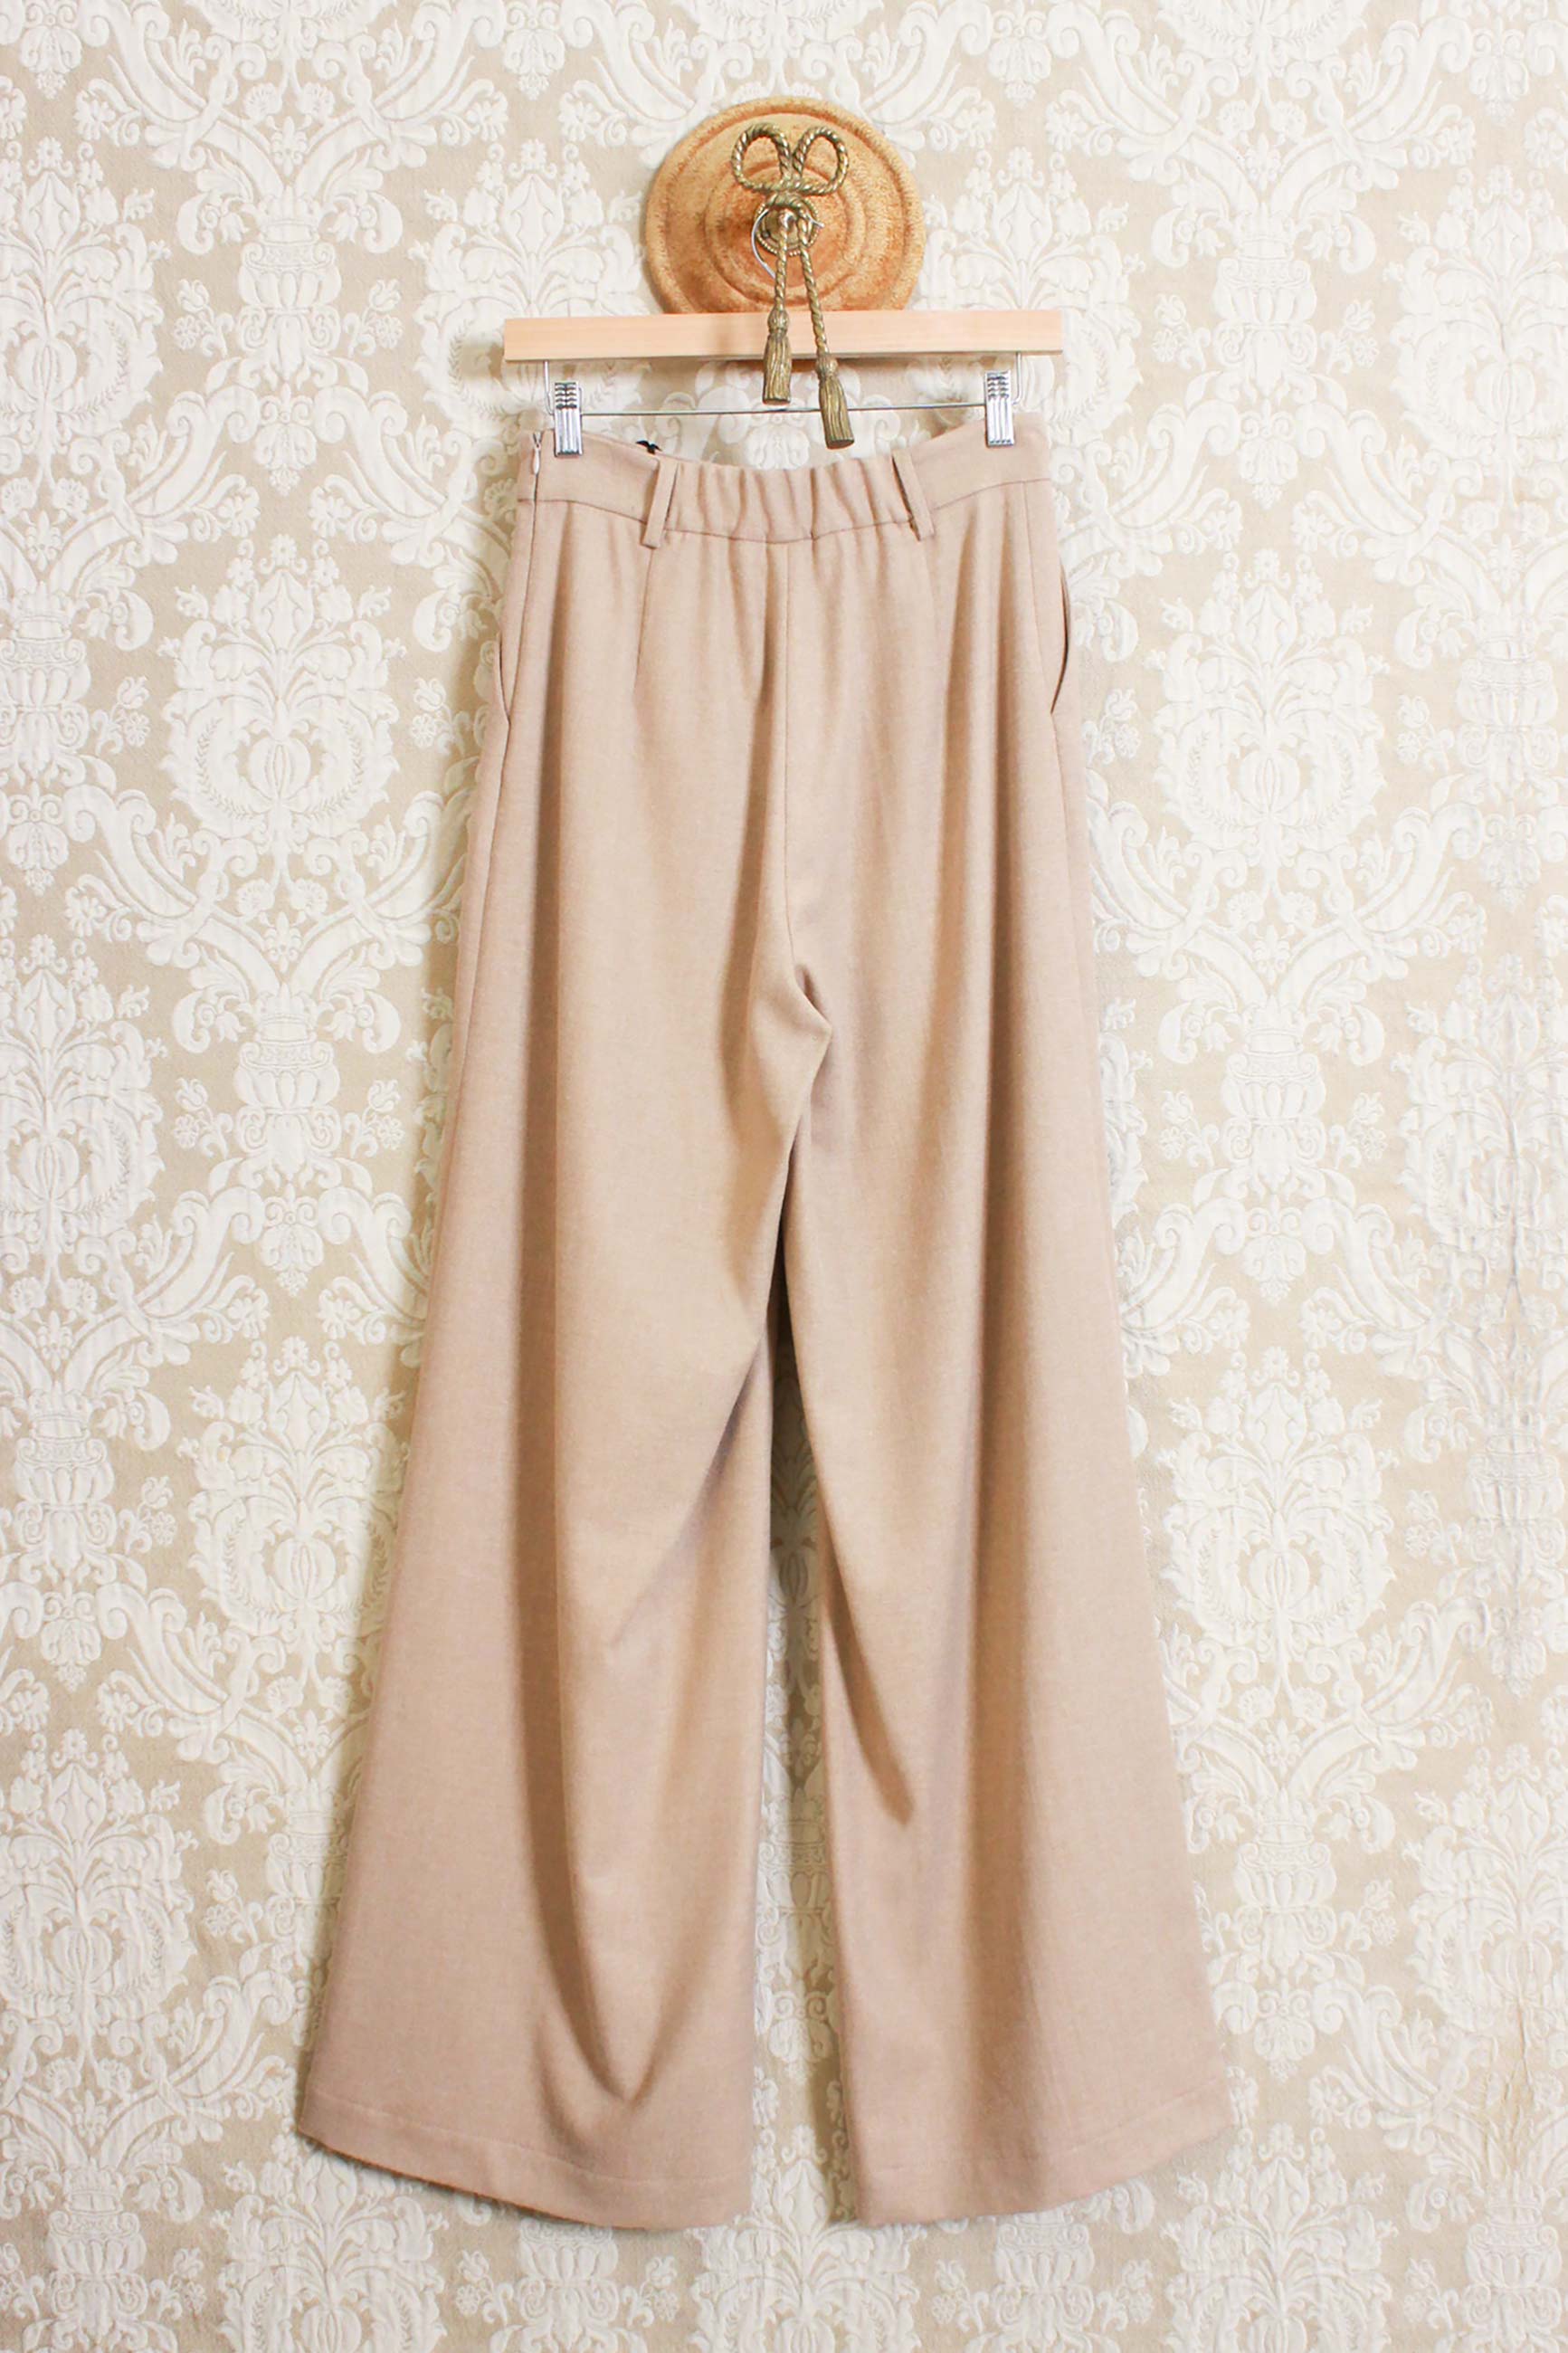 Pantalone a campana in lana della maison niù fashion color beige paja